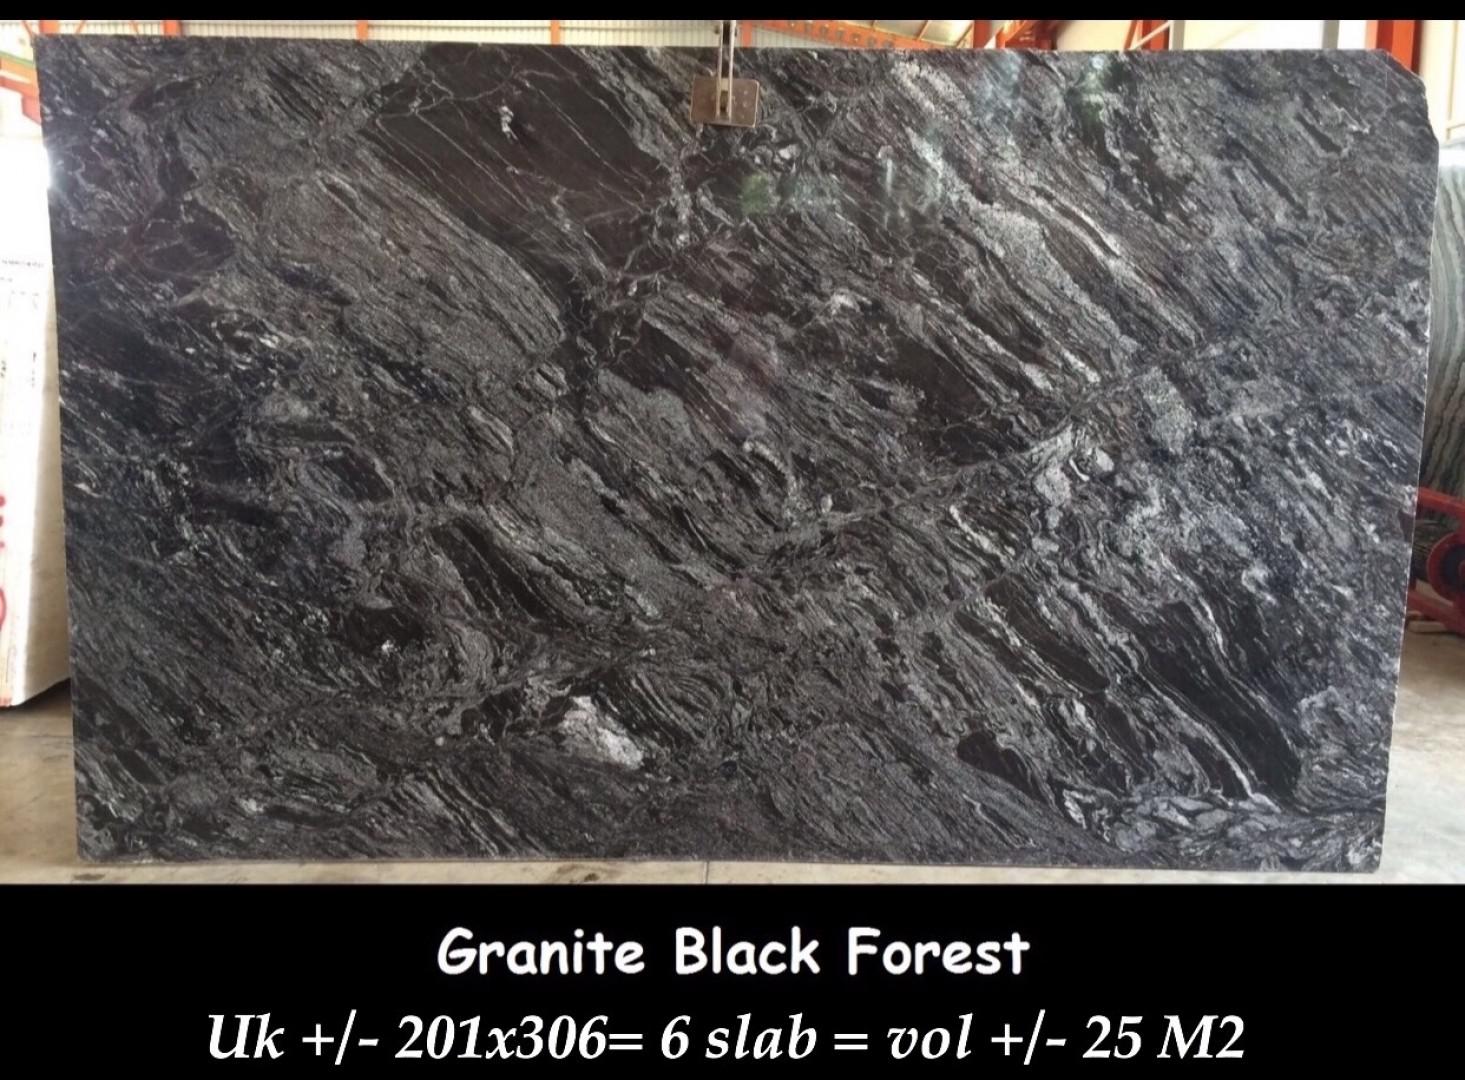 Granite Black Forest from JSP